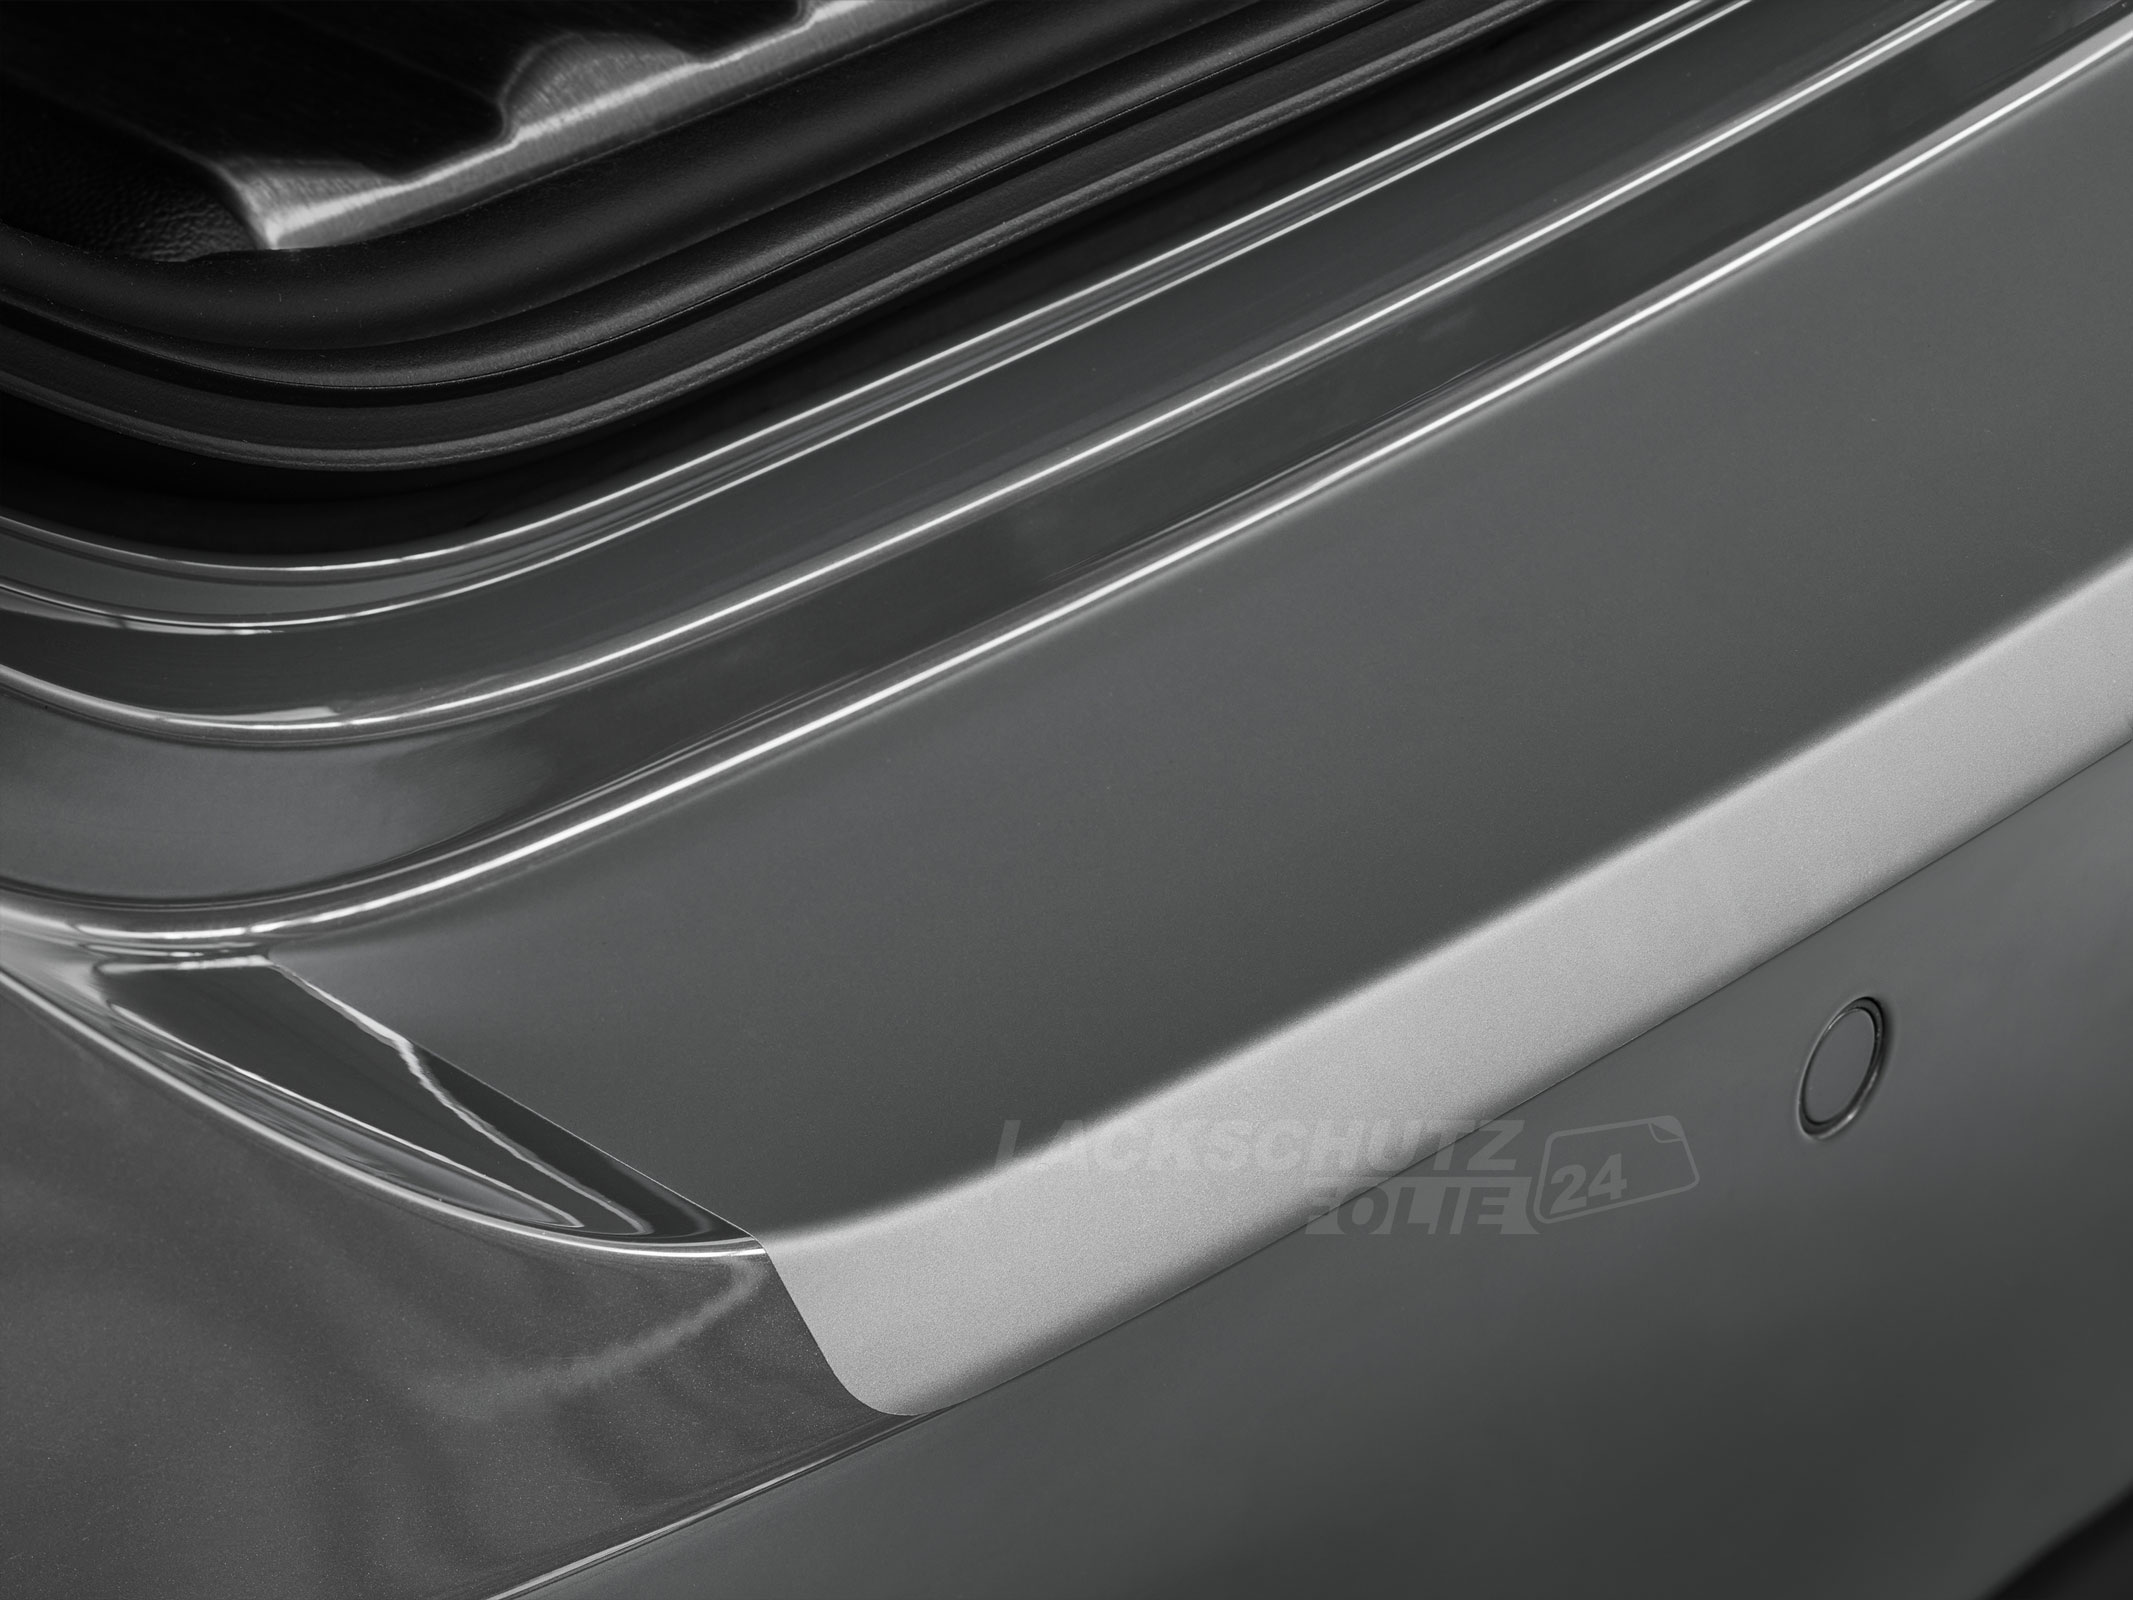 Ladekantenschutzfolie - Transparent Glatt MATT 110 µm stark  für Mazda Premacy ab BJ 2003